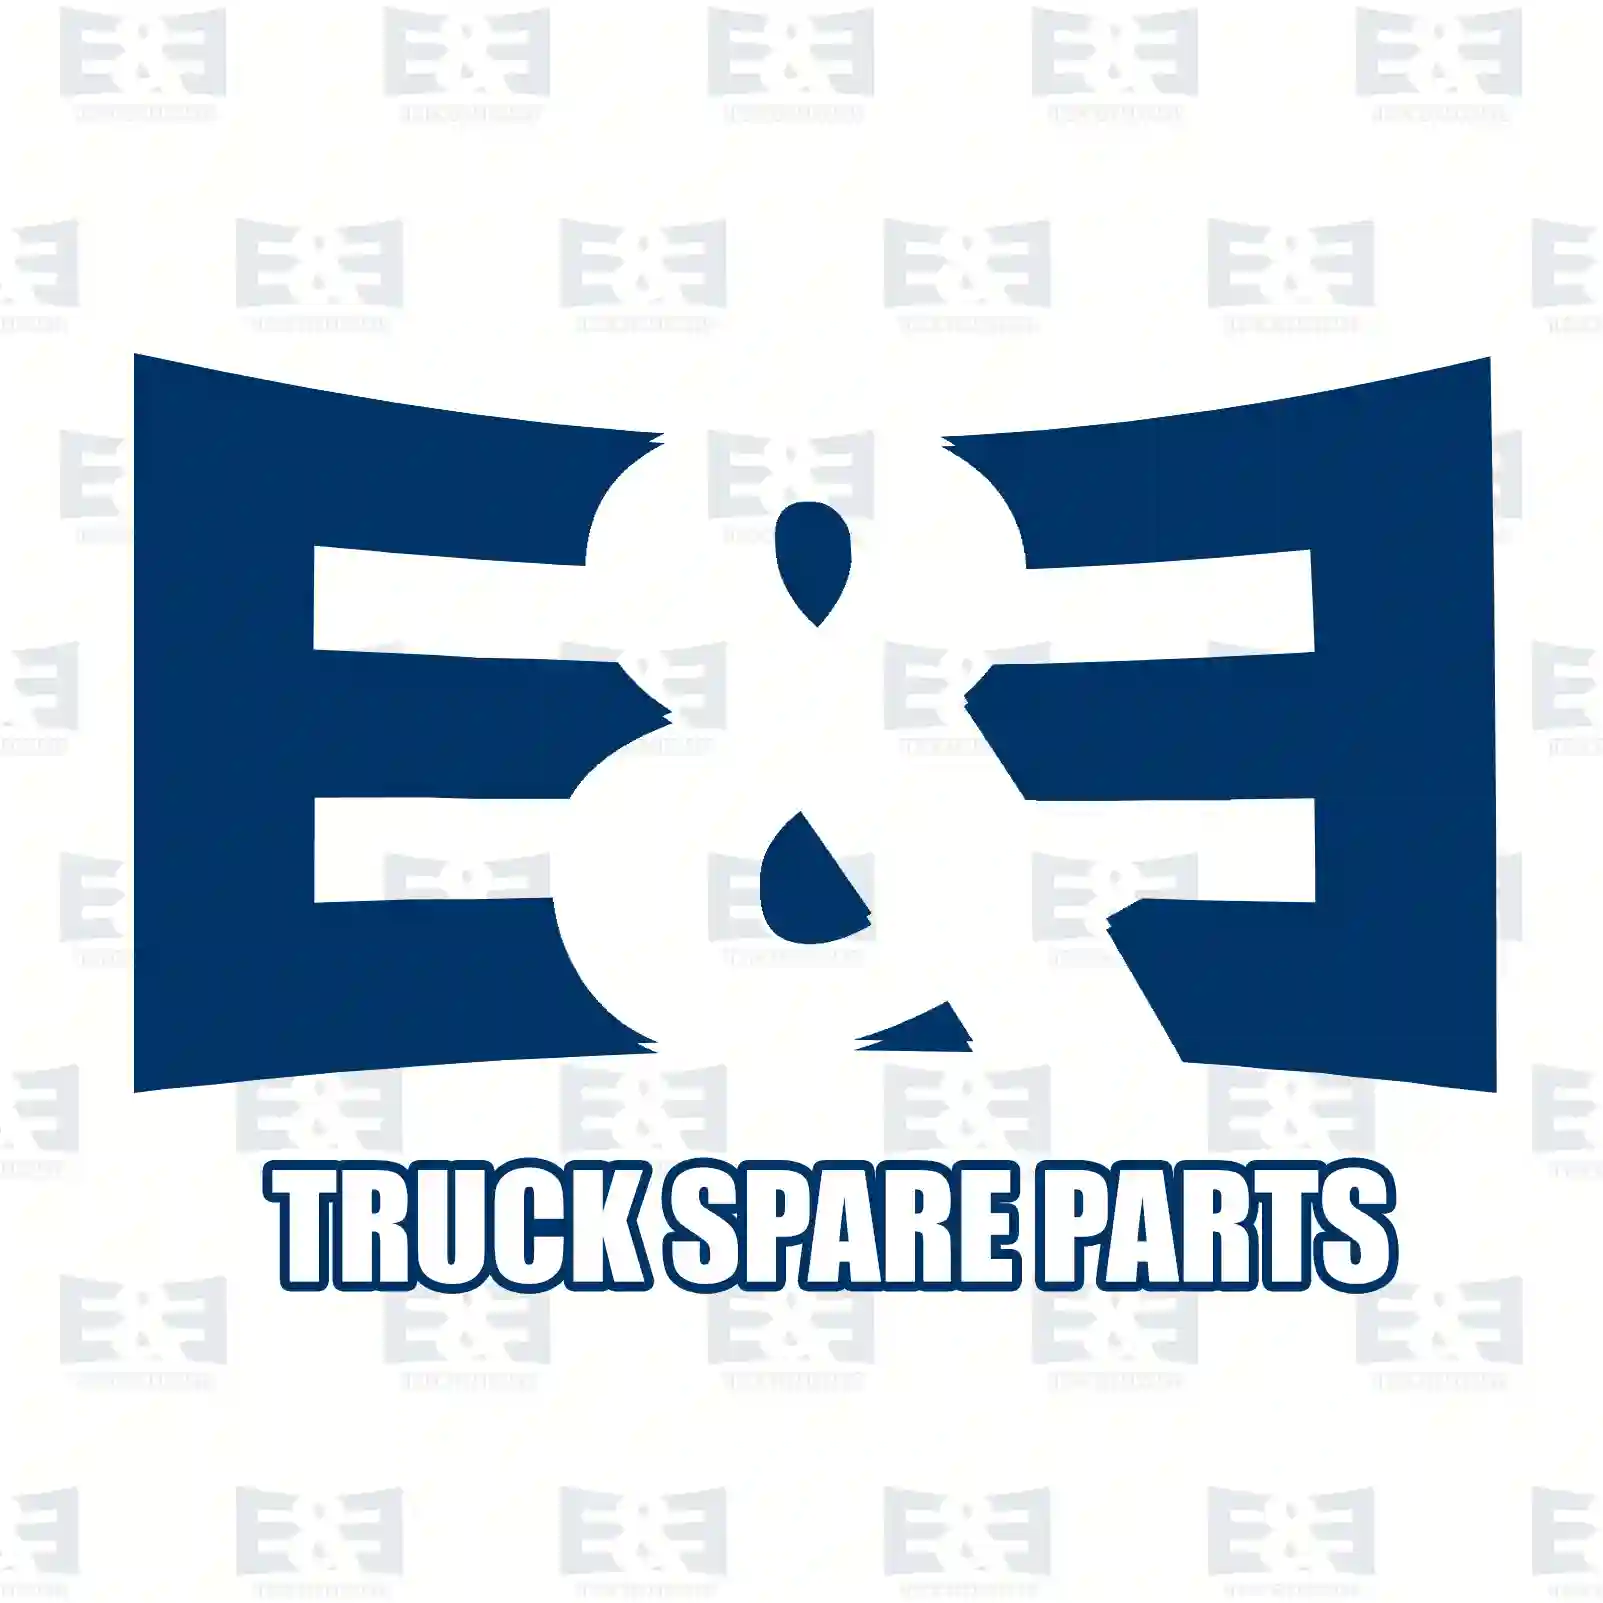 Shock absorber, 2E2283855, 6393260300, 6393262100, , , , ||  2E2283855 E&E Truck Spare Parts | Truck Spare Parts, Auotomotive Spare Parts Shock absorber, 2E2283855, 6393260300, 6393262100, , , , ||  2E2283855 E&E Truck Spare Parts | Truck Spare Parts, Auotomotive Spare Parts